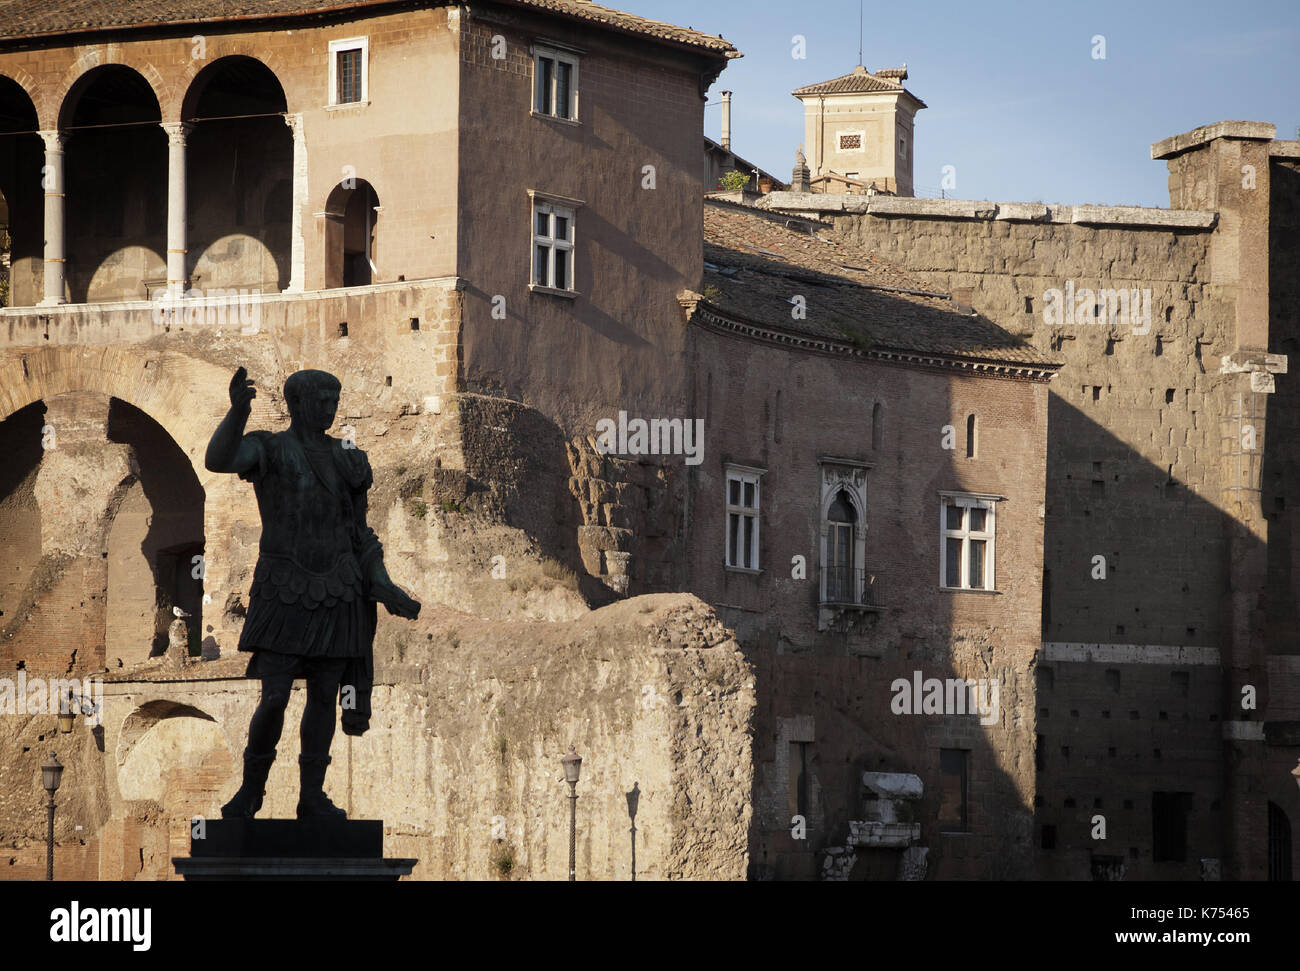 Roma, foros imperiales. Europa, Italia, el foro romano Foto de stock